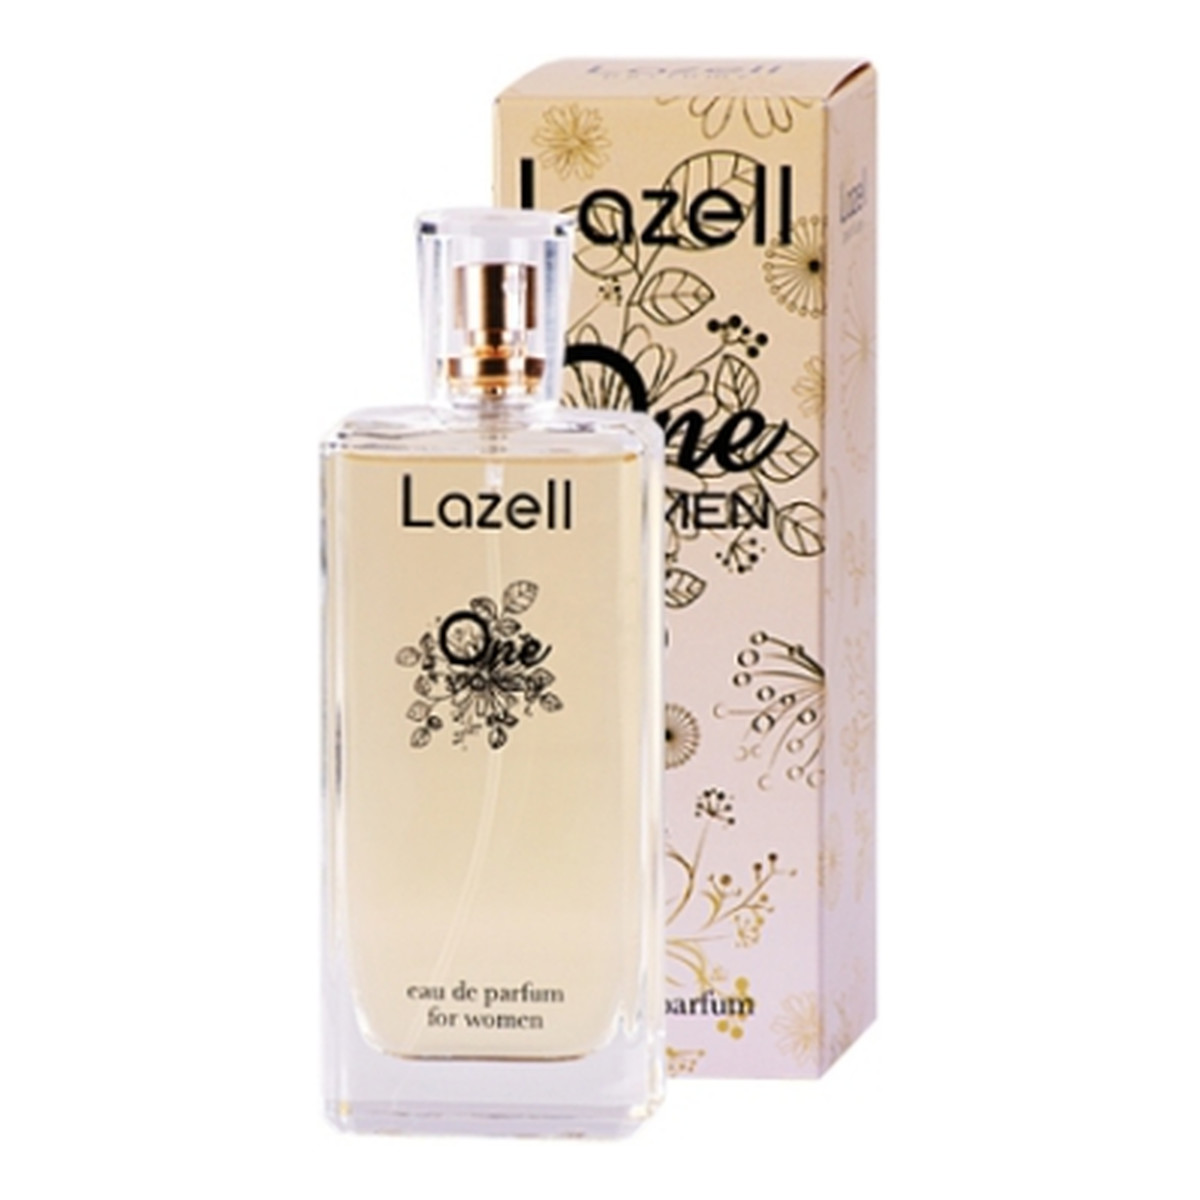 Lazell One Women - woda perfumowana 100ml